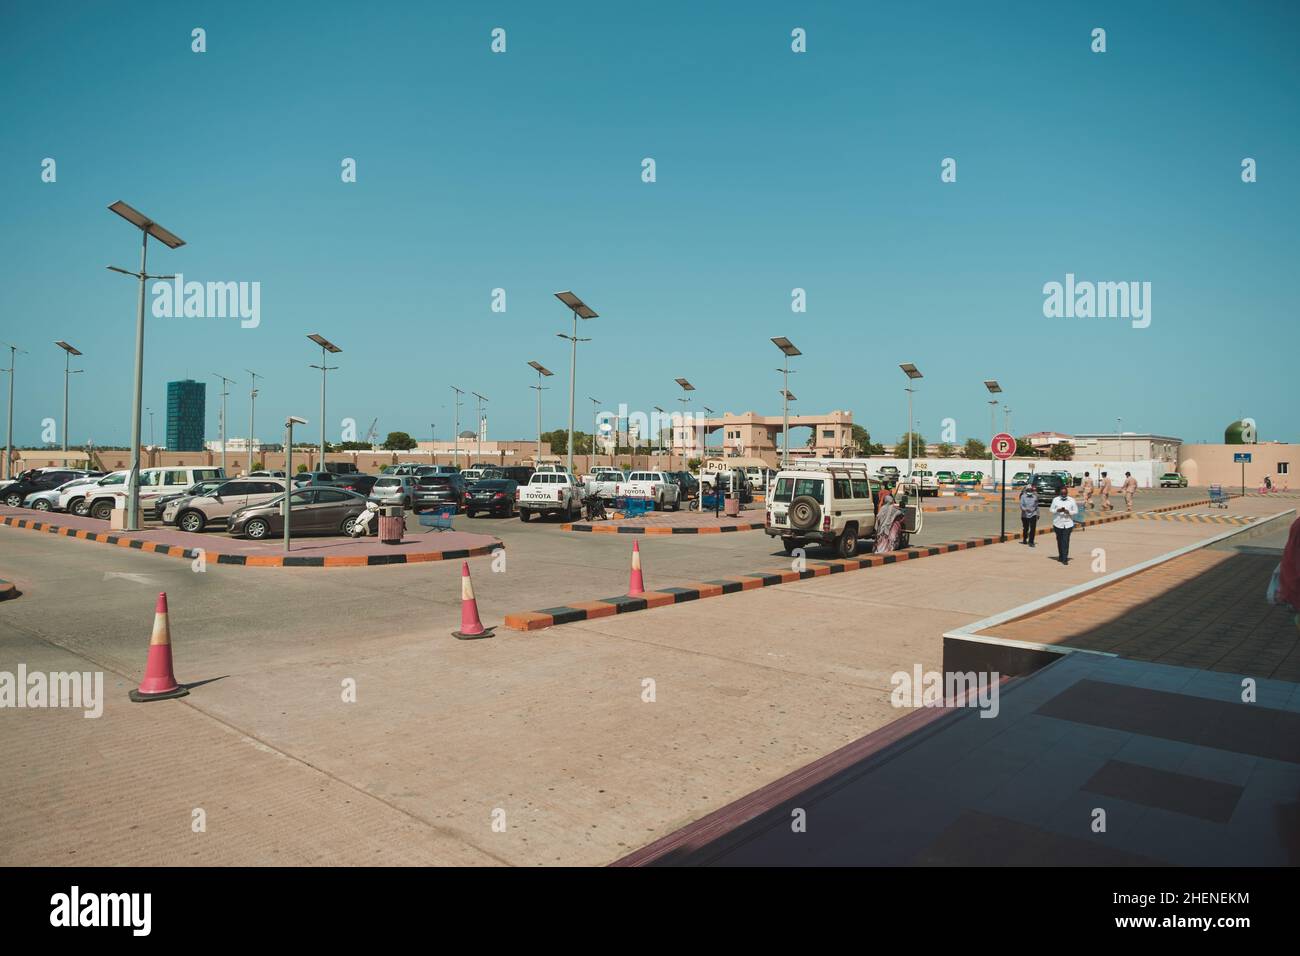 Djibouti, Djibouti - May 17, 2021: A car park of a mall in Djibouti. Editorial shot in Djibouti. Stock Photo